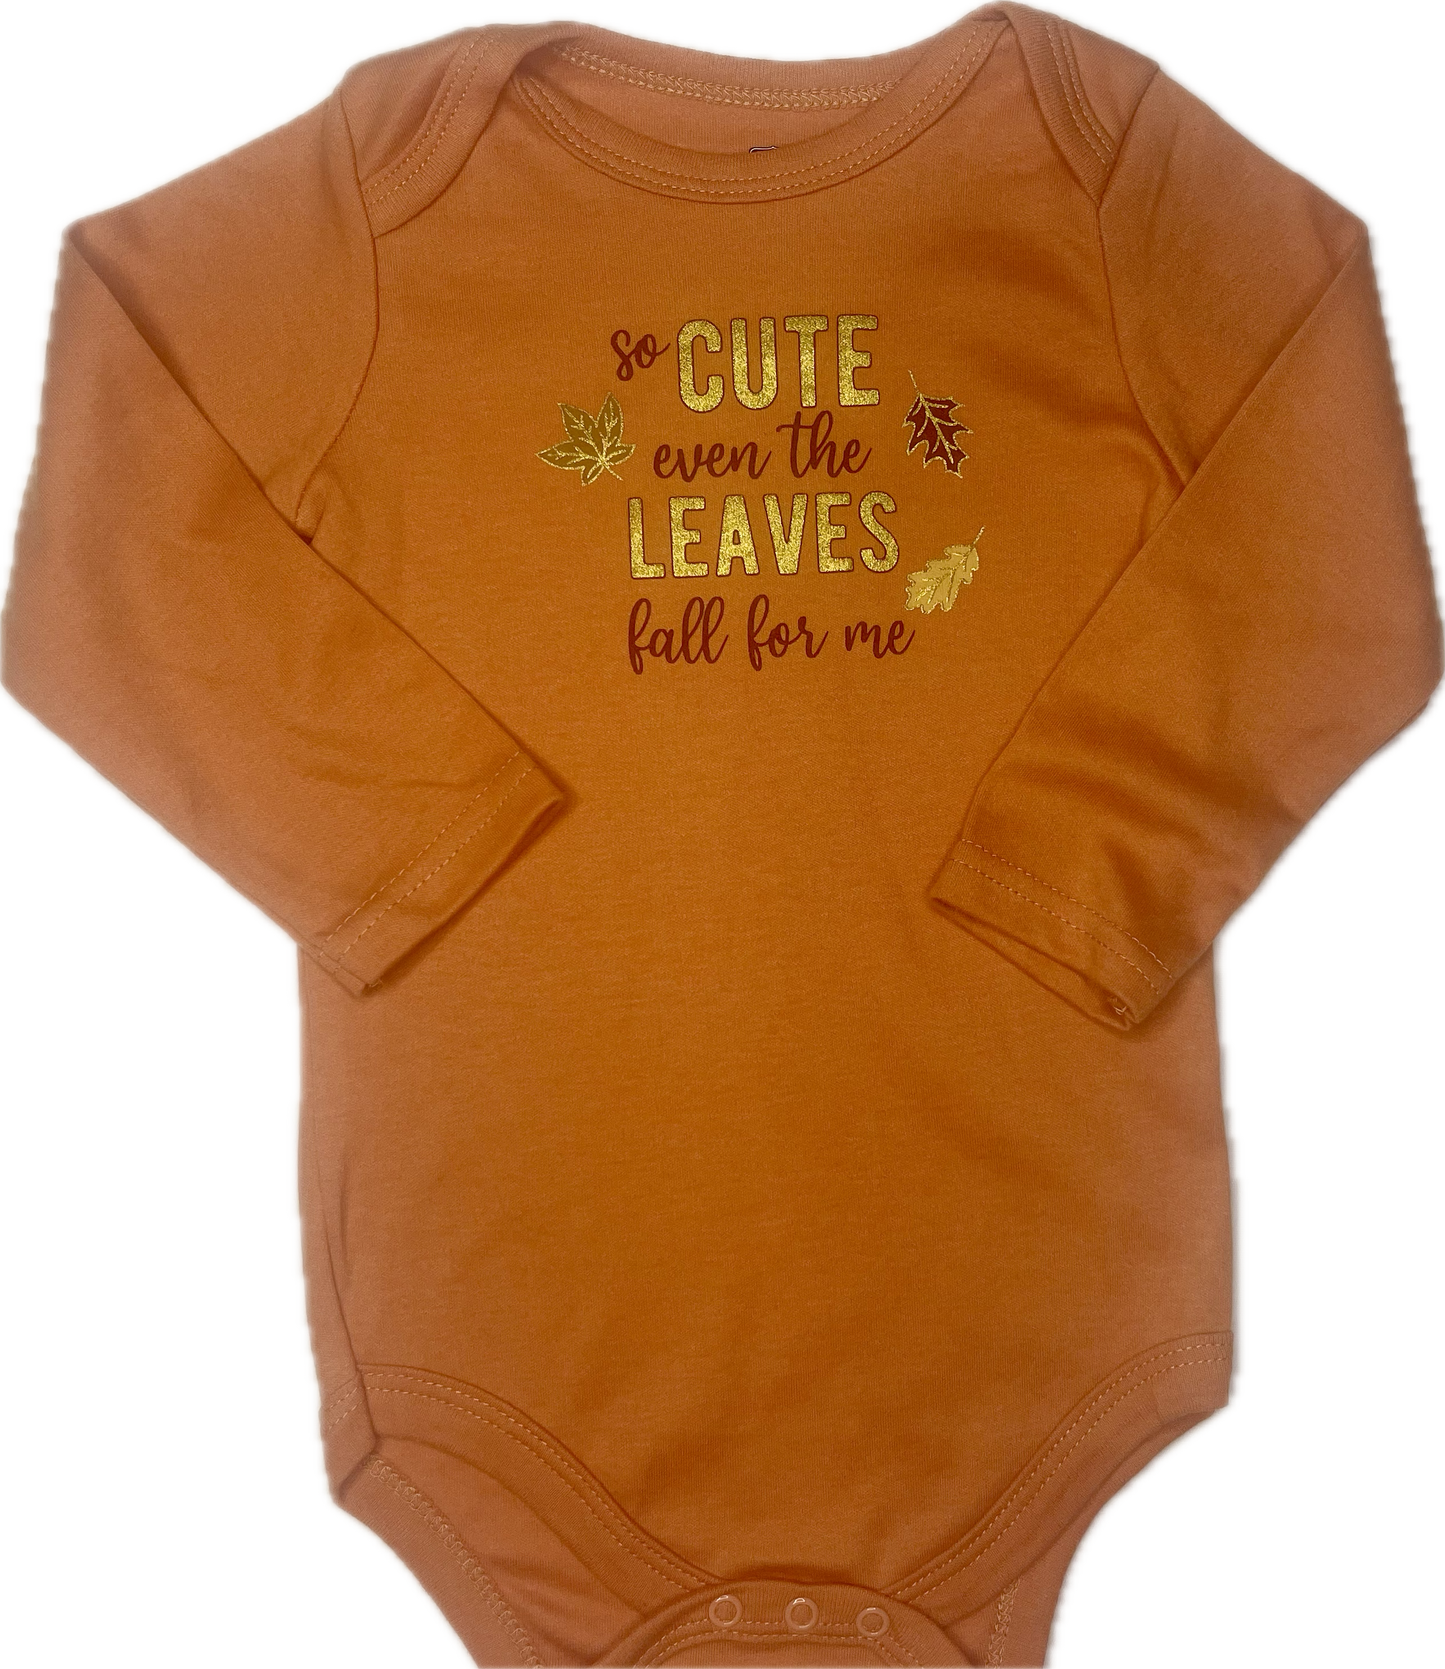 Body manga larga otoño naranja letras doradas cute 18 meses